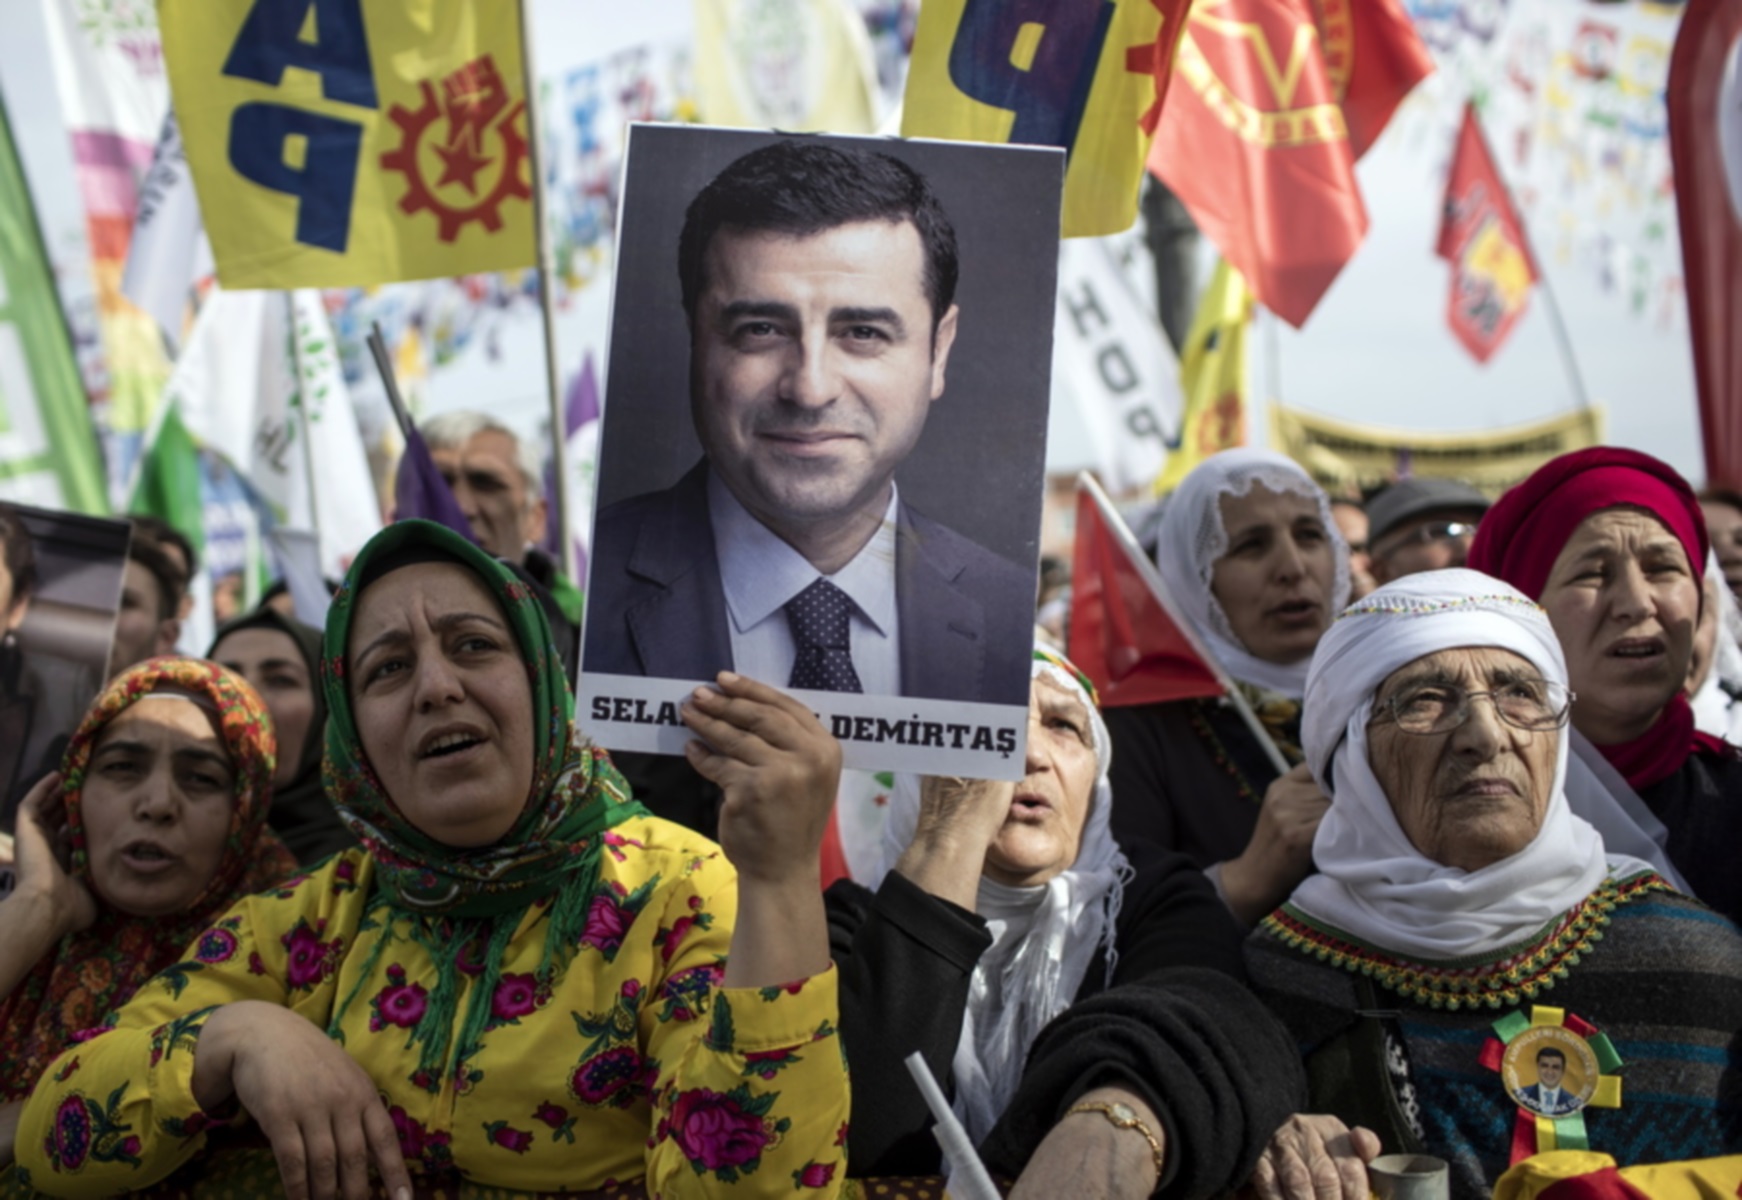 Καταδίκη της Τουρκίας από το Ευρωπαϊκό Δικαστήριο Ανθρώπινων Δικαιωμάτων για τον Ντεμιρτάς – “Ελευθερώστε τον!”